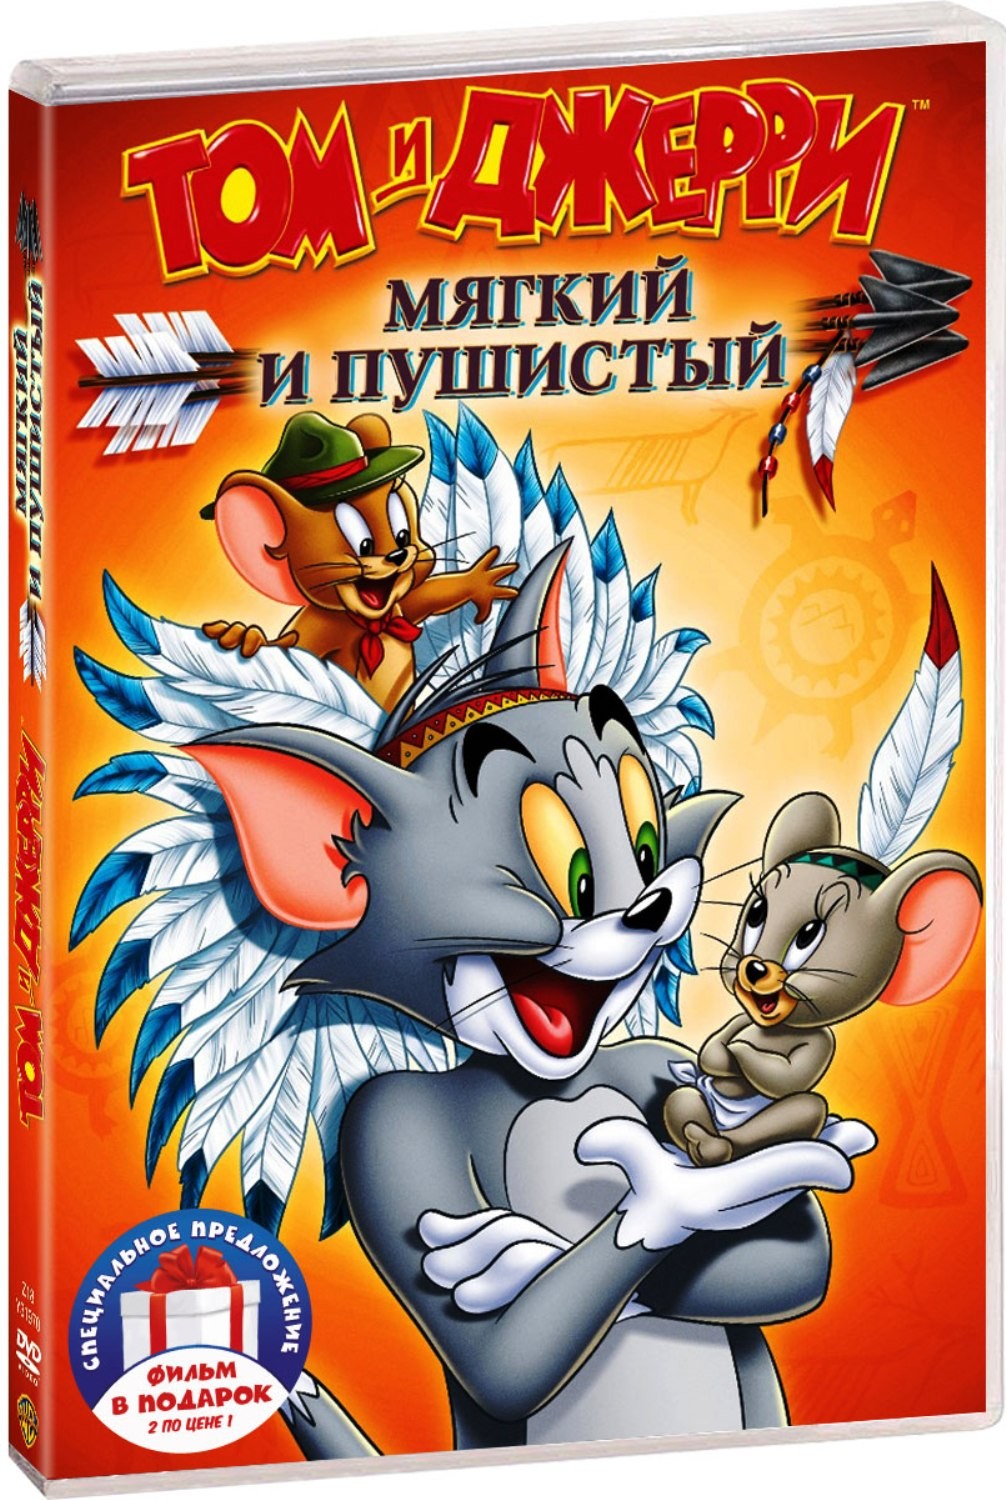 Том и Джерри: Мягкий и пушистый / Мышиные проблемы (2 DVD)